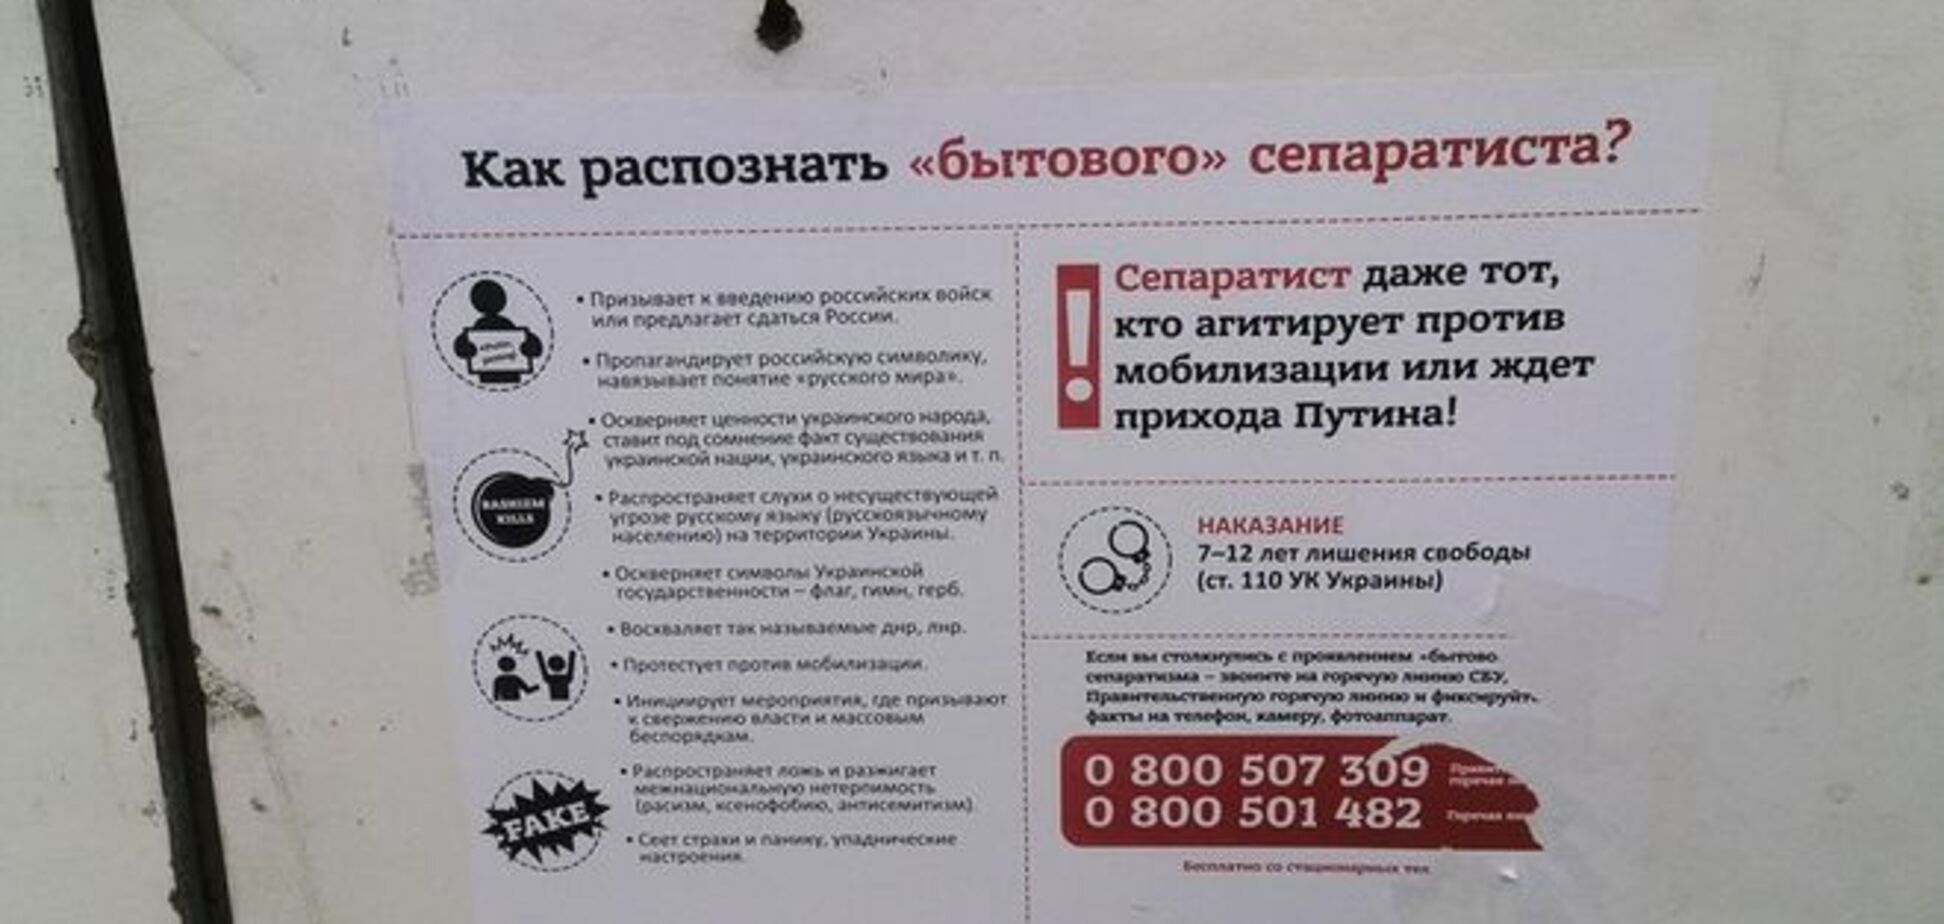 В Славянске уже разыскивают 'бытовых сепаратистов': фотофакт